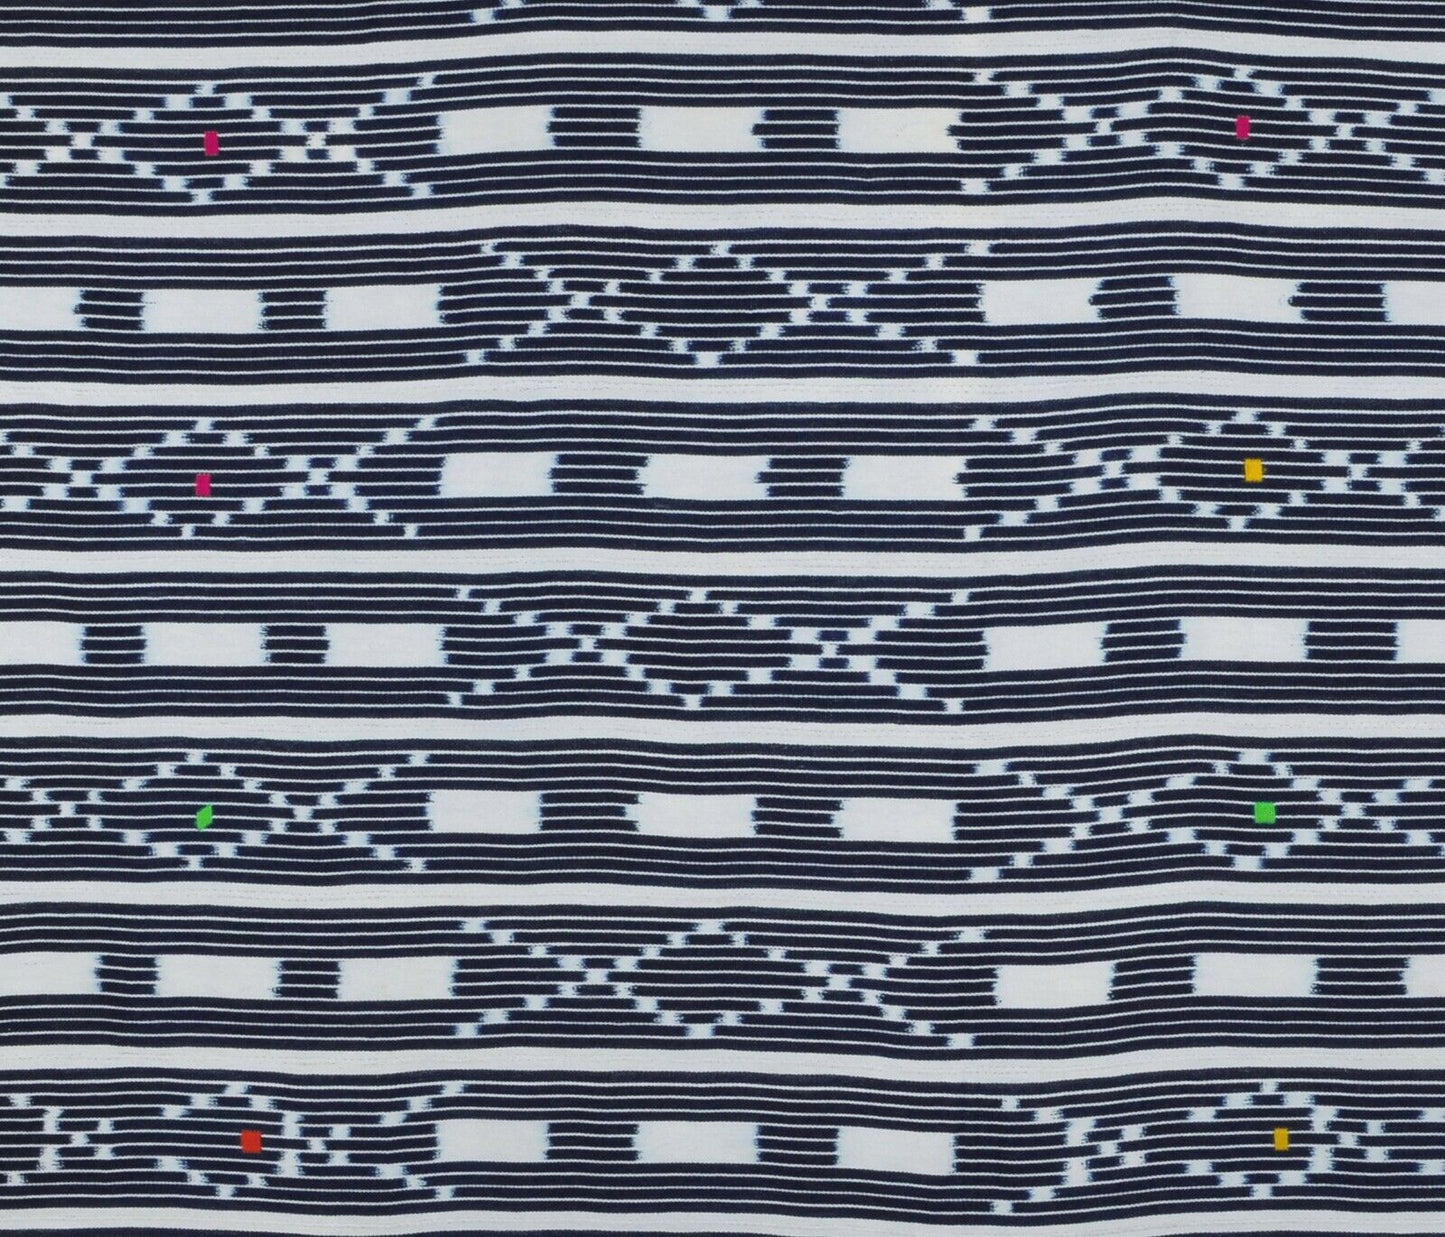 Afrikanisches handgewebtes Tuch Elfenbeinküste Vintage Baule Art Textil Heimtextilien - Tribalgh